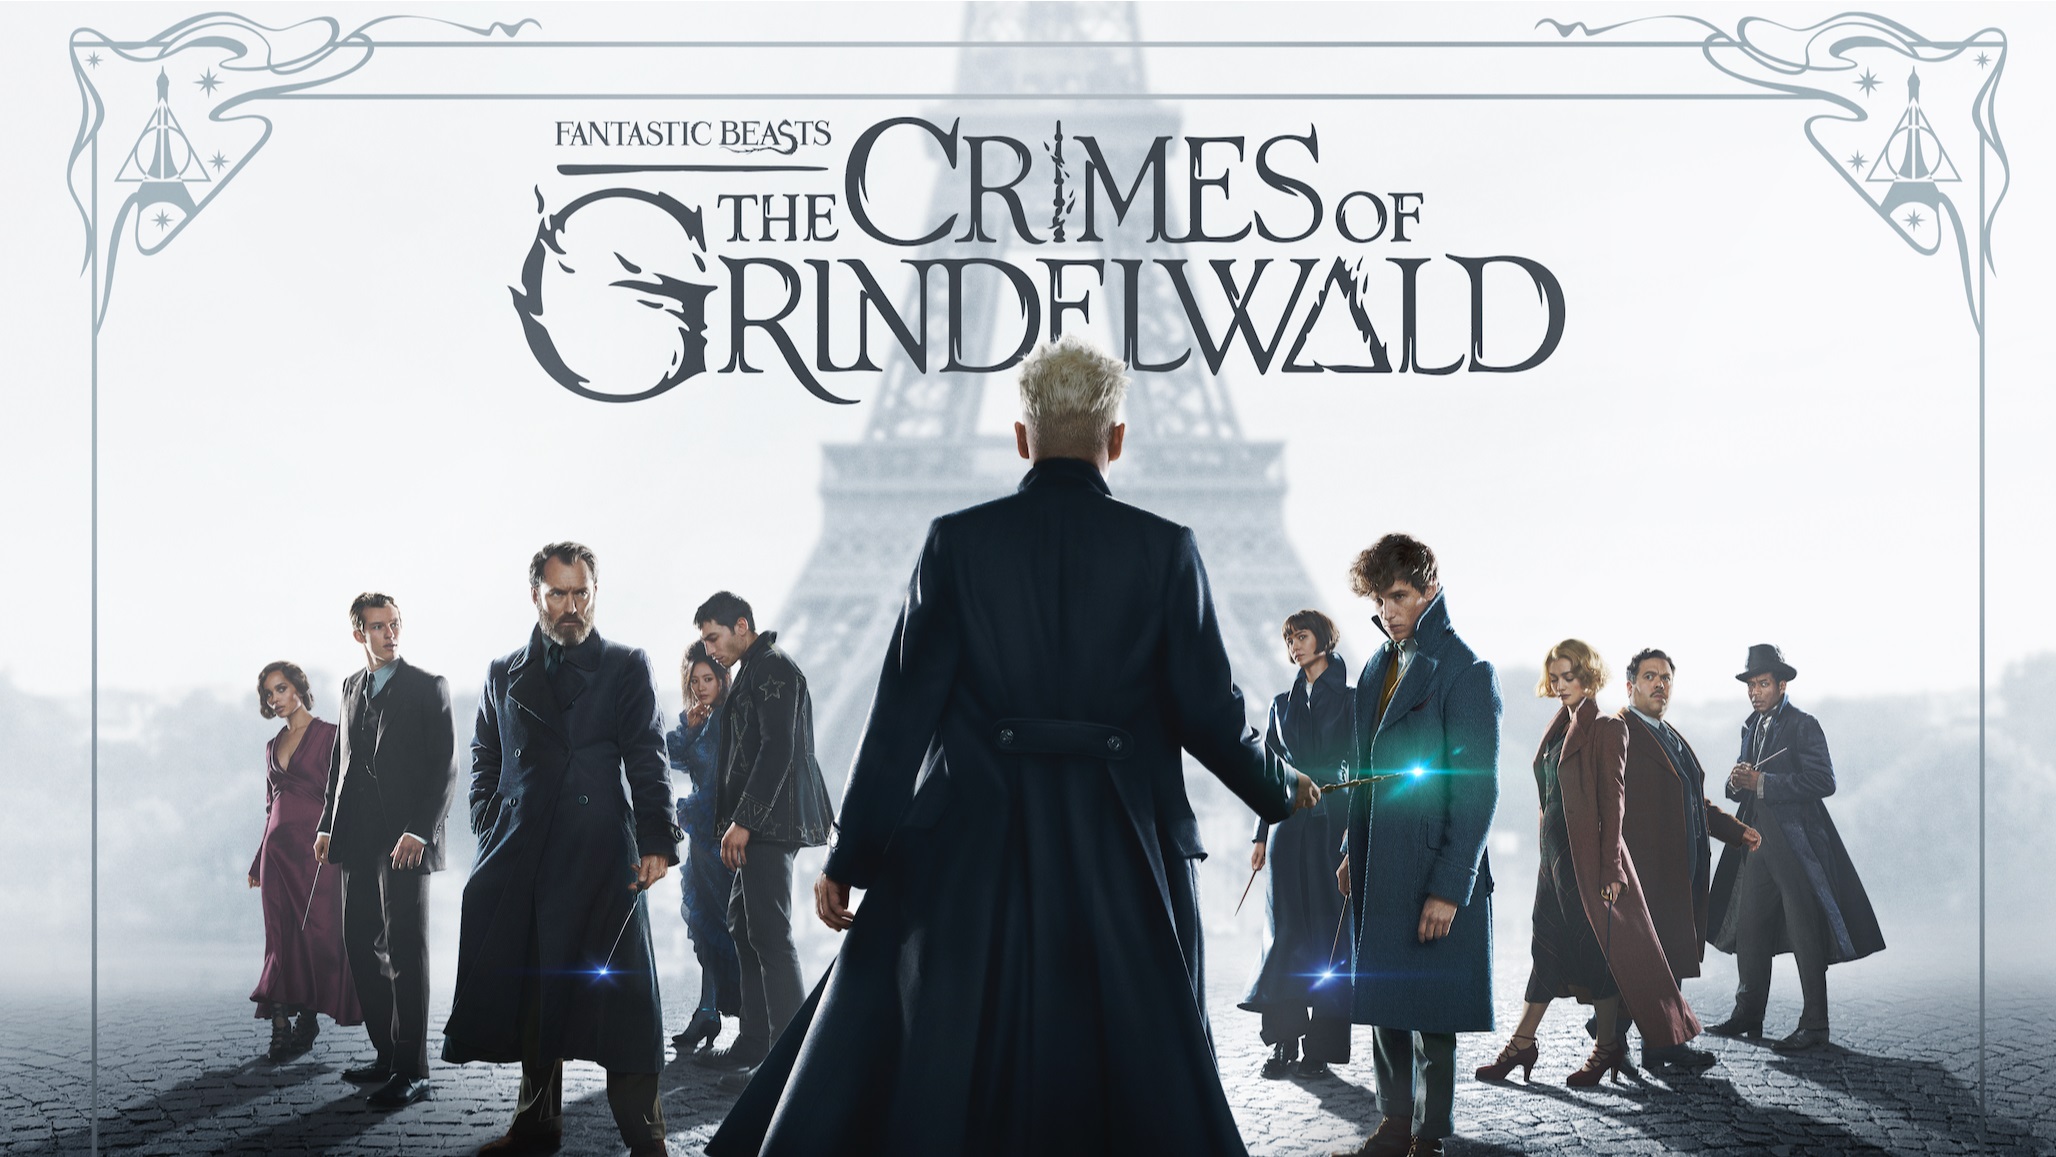 Animales Fantásticos: Los crímenes de Grindelwald